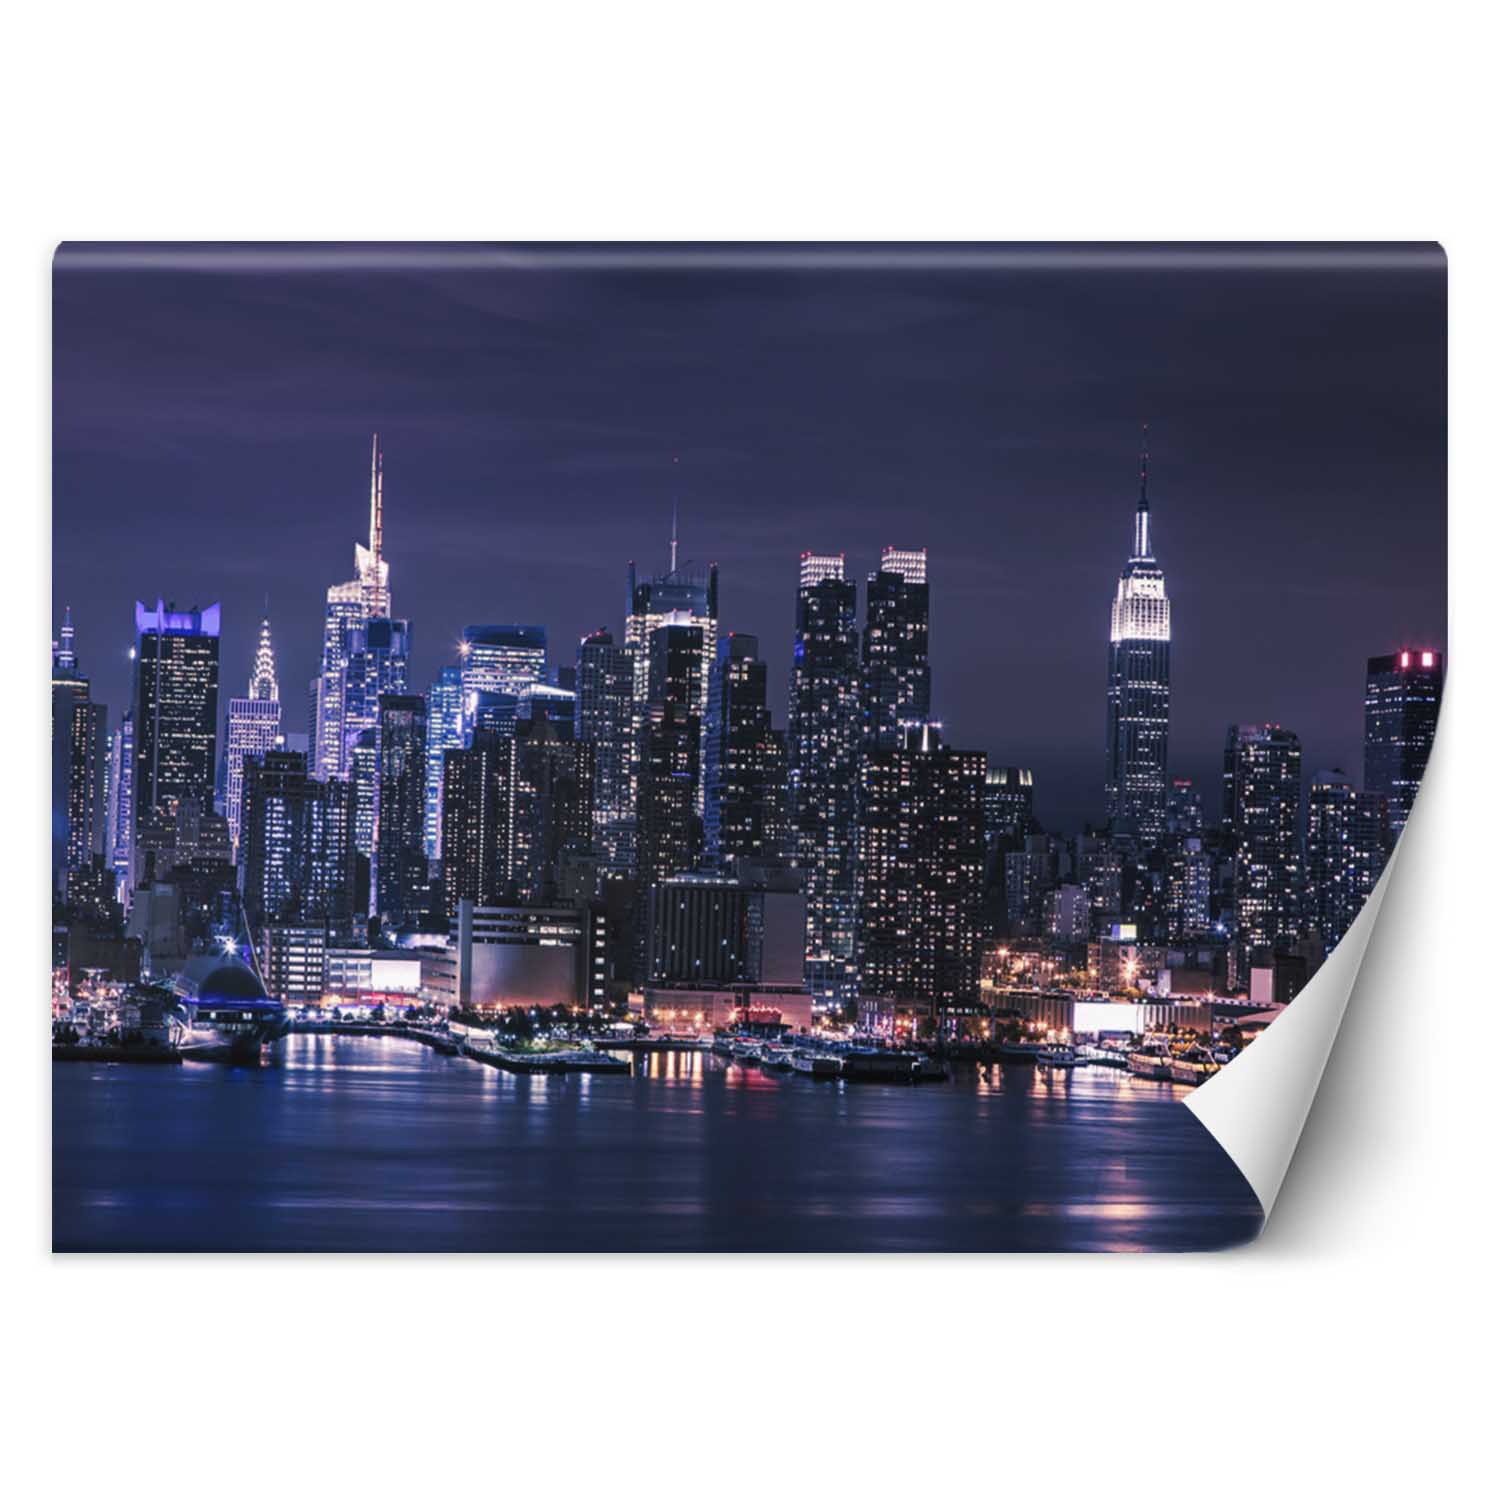 Trend24 – Behang – New York ‘S Nachts – Vliesbehang – Fotobehang – Behang Woonkamer – 400×280 cm – Incl. behanglijm